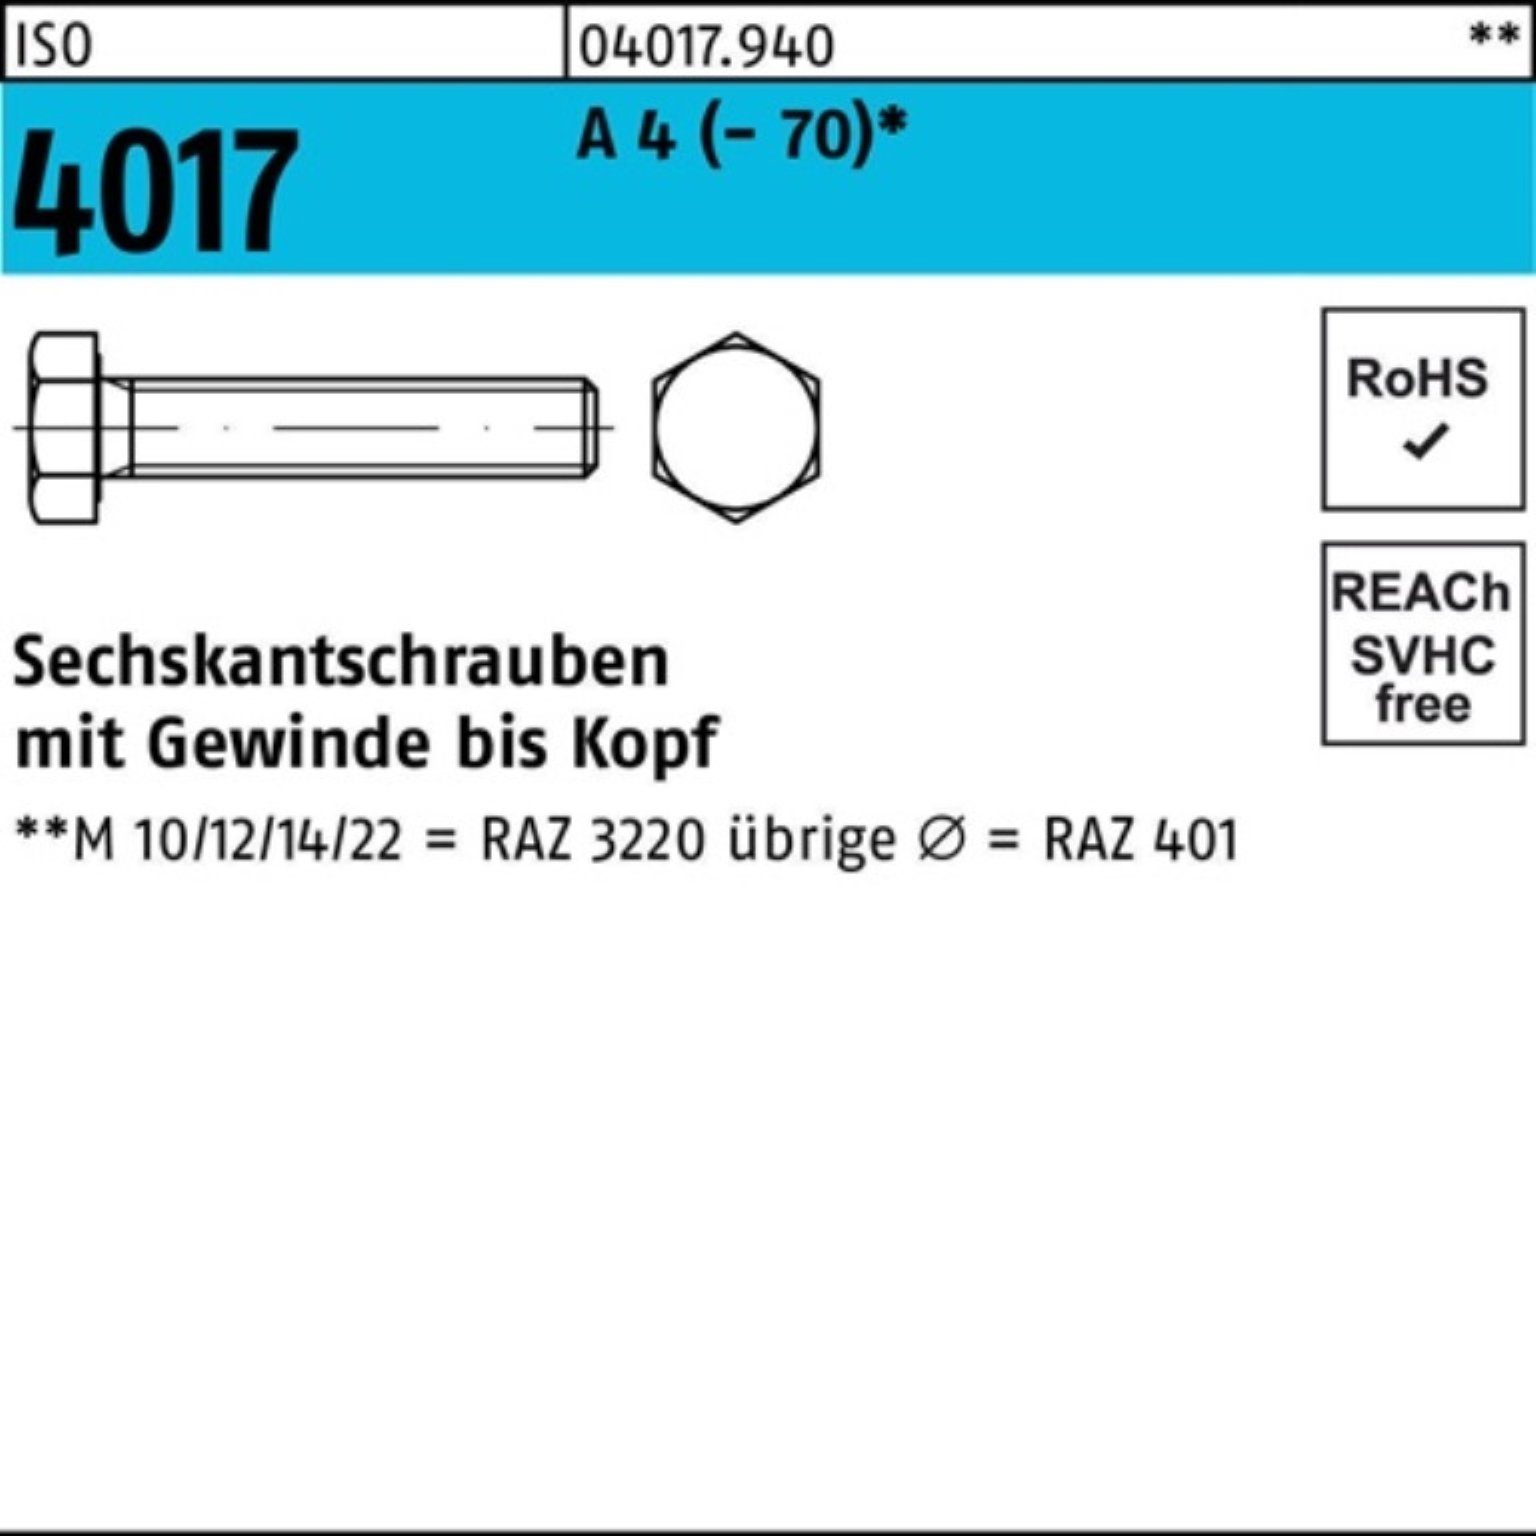 Bufab Sechskantschraube 200er Pack Sechskantschraube M4x 4 ISO A 200 Stück 4017 ISO 401 18 VG